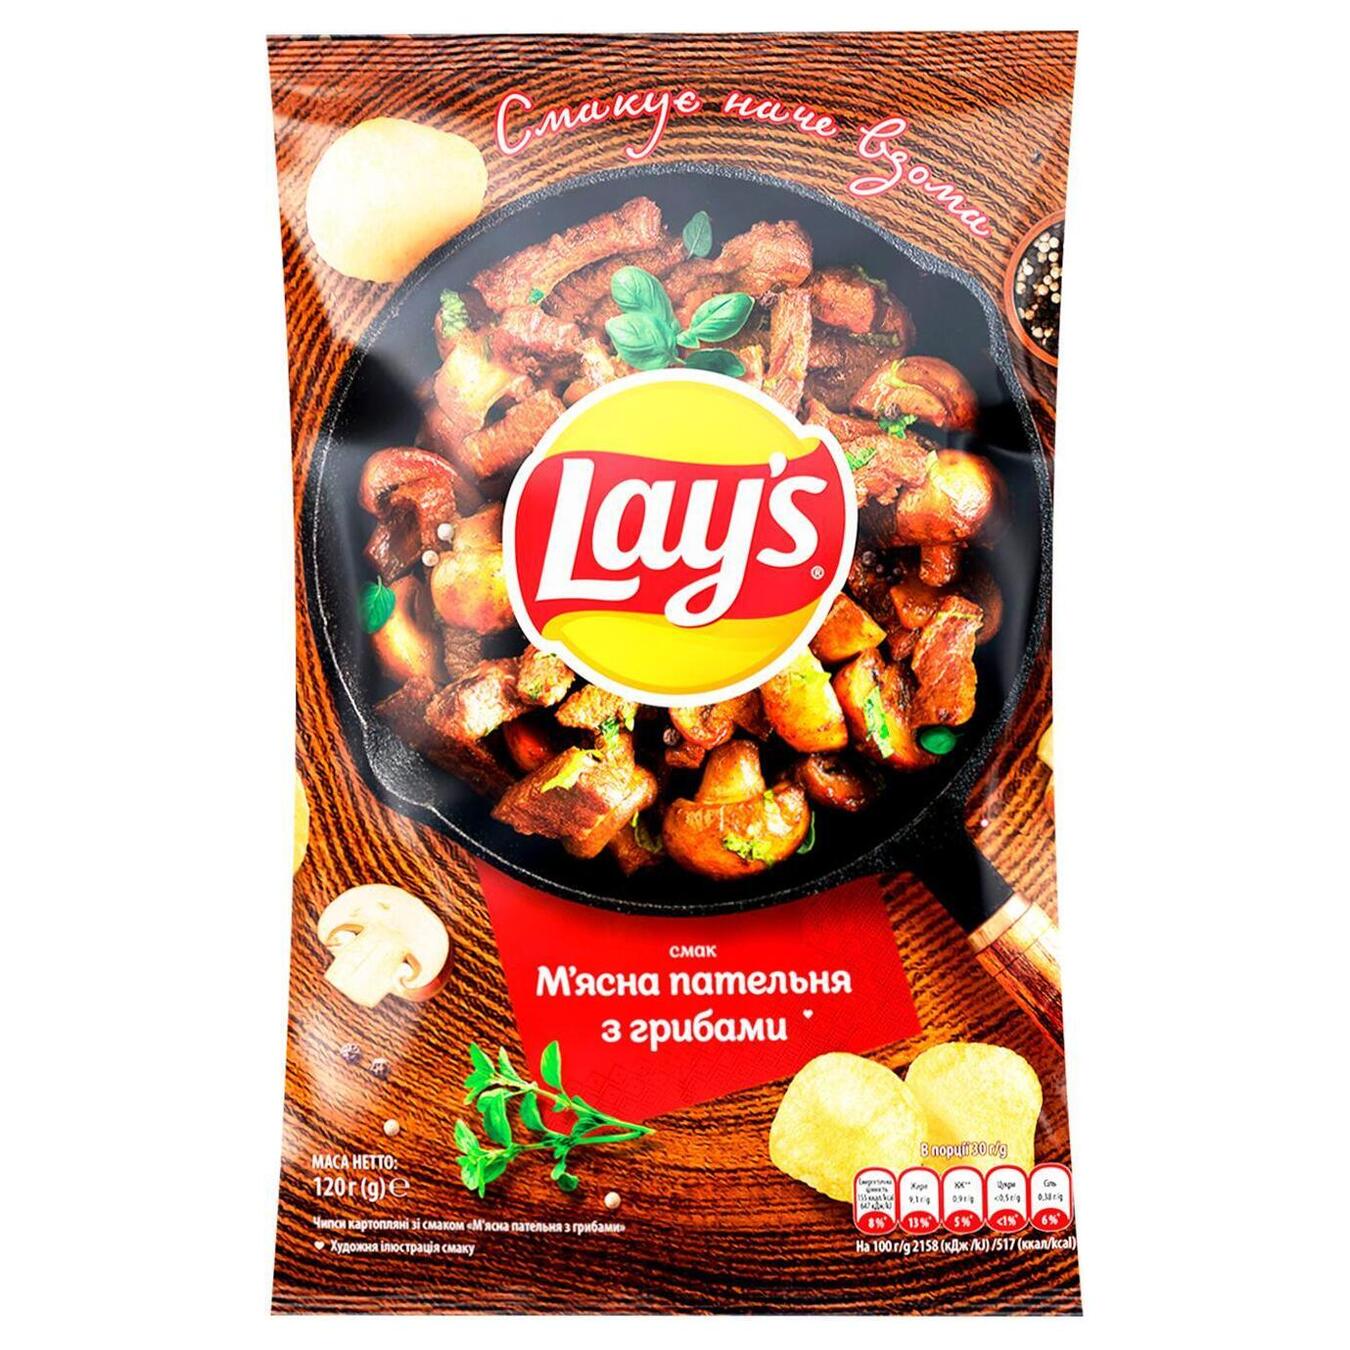 Чипсы Lay's картофельные вкус мясной сковороды с грибами мягкая упаковка 120г